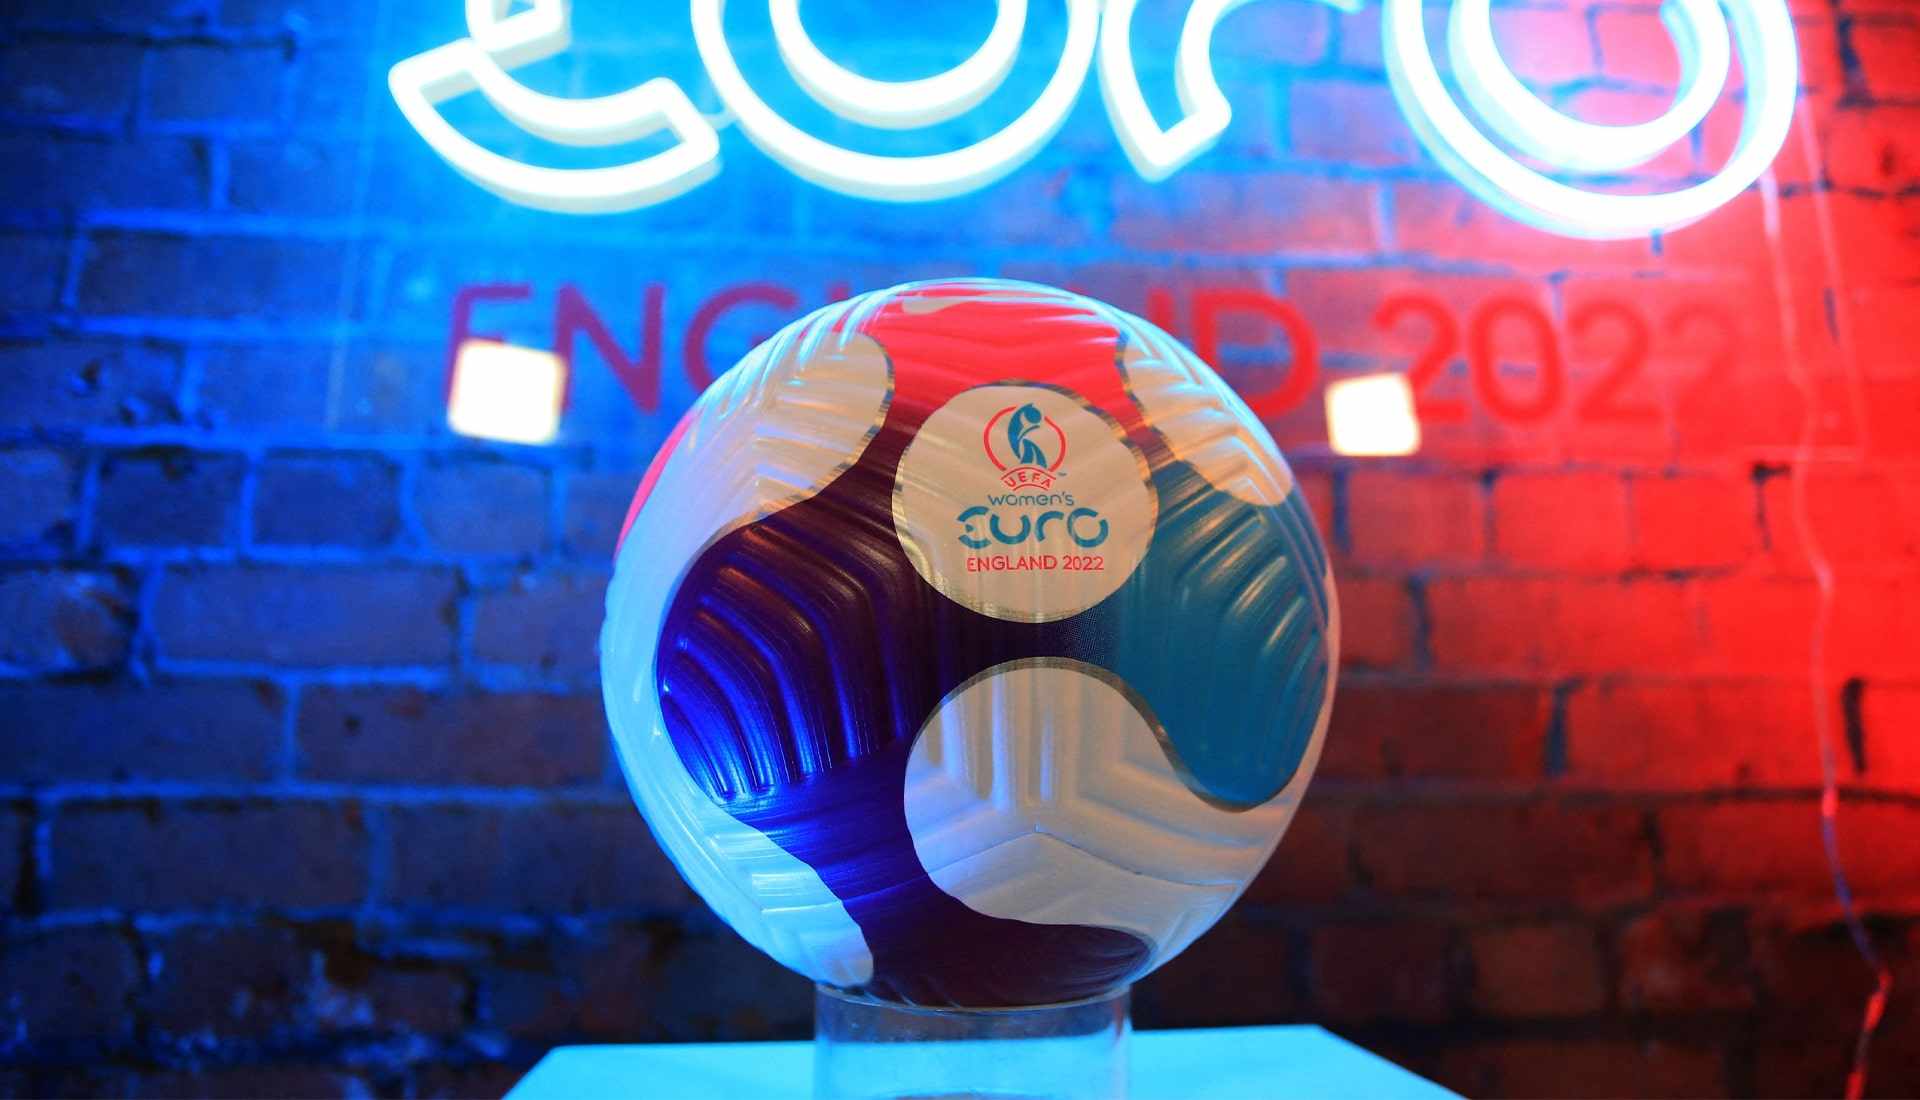 Balón oficial Nike para la Eurocopa femenina 2022